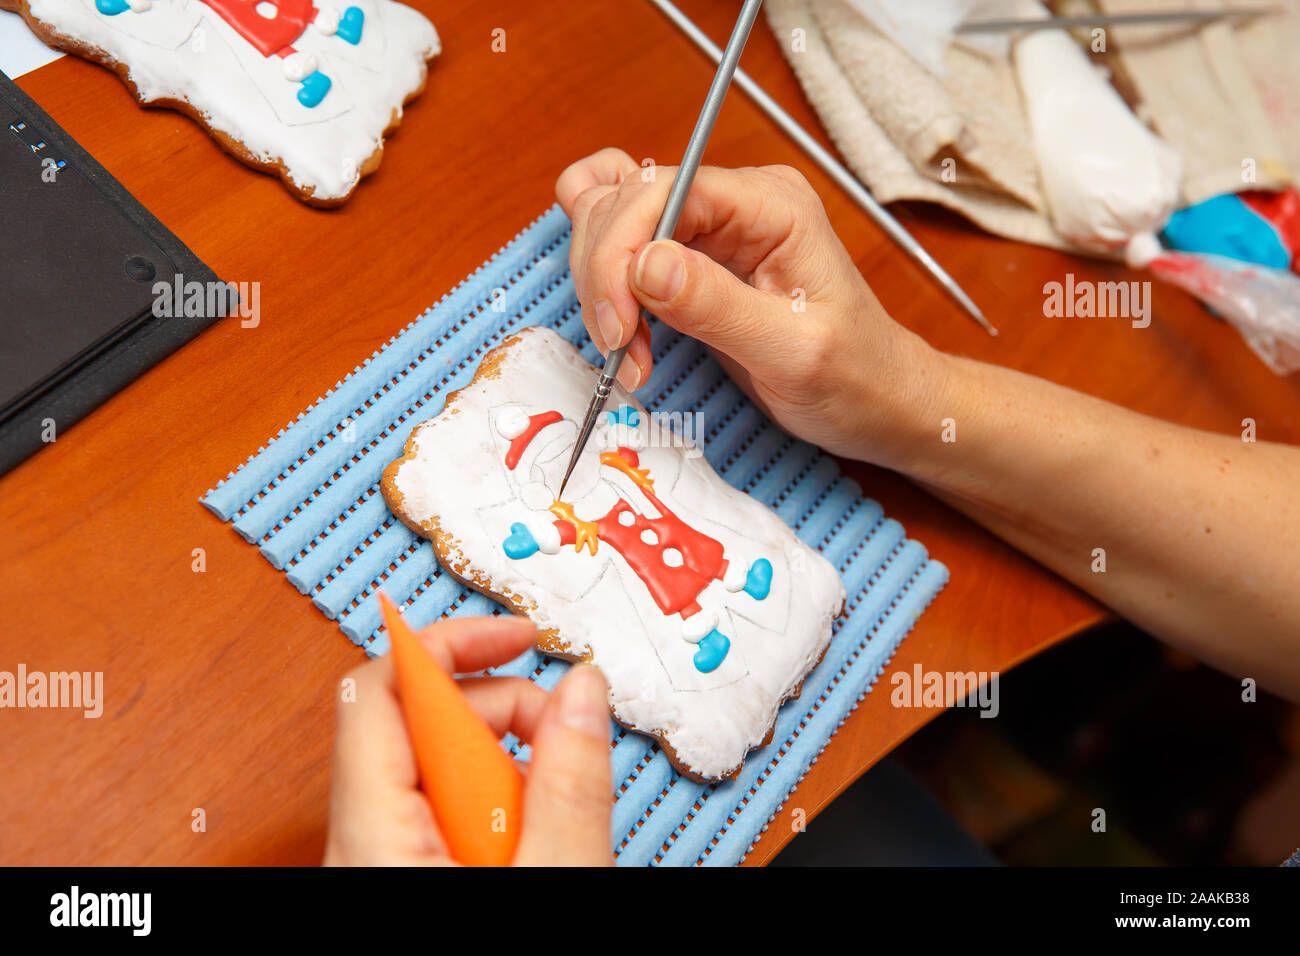 Ein junges Mädchen ist in Dekoration Lebkuchen Cookies eingeschaltet. Weihnachten und Neujahr Geschenke und die Herstellung von Lebkuchen Kekse für Weihnachten Stockfoto